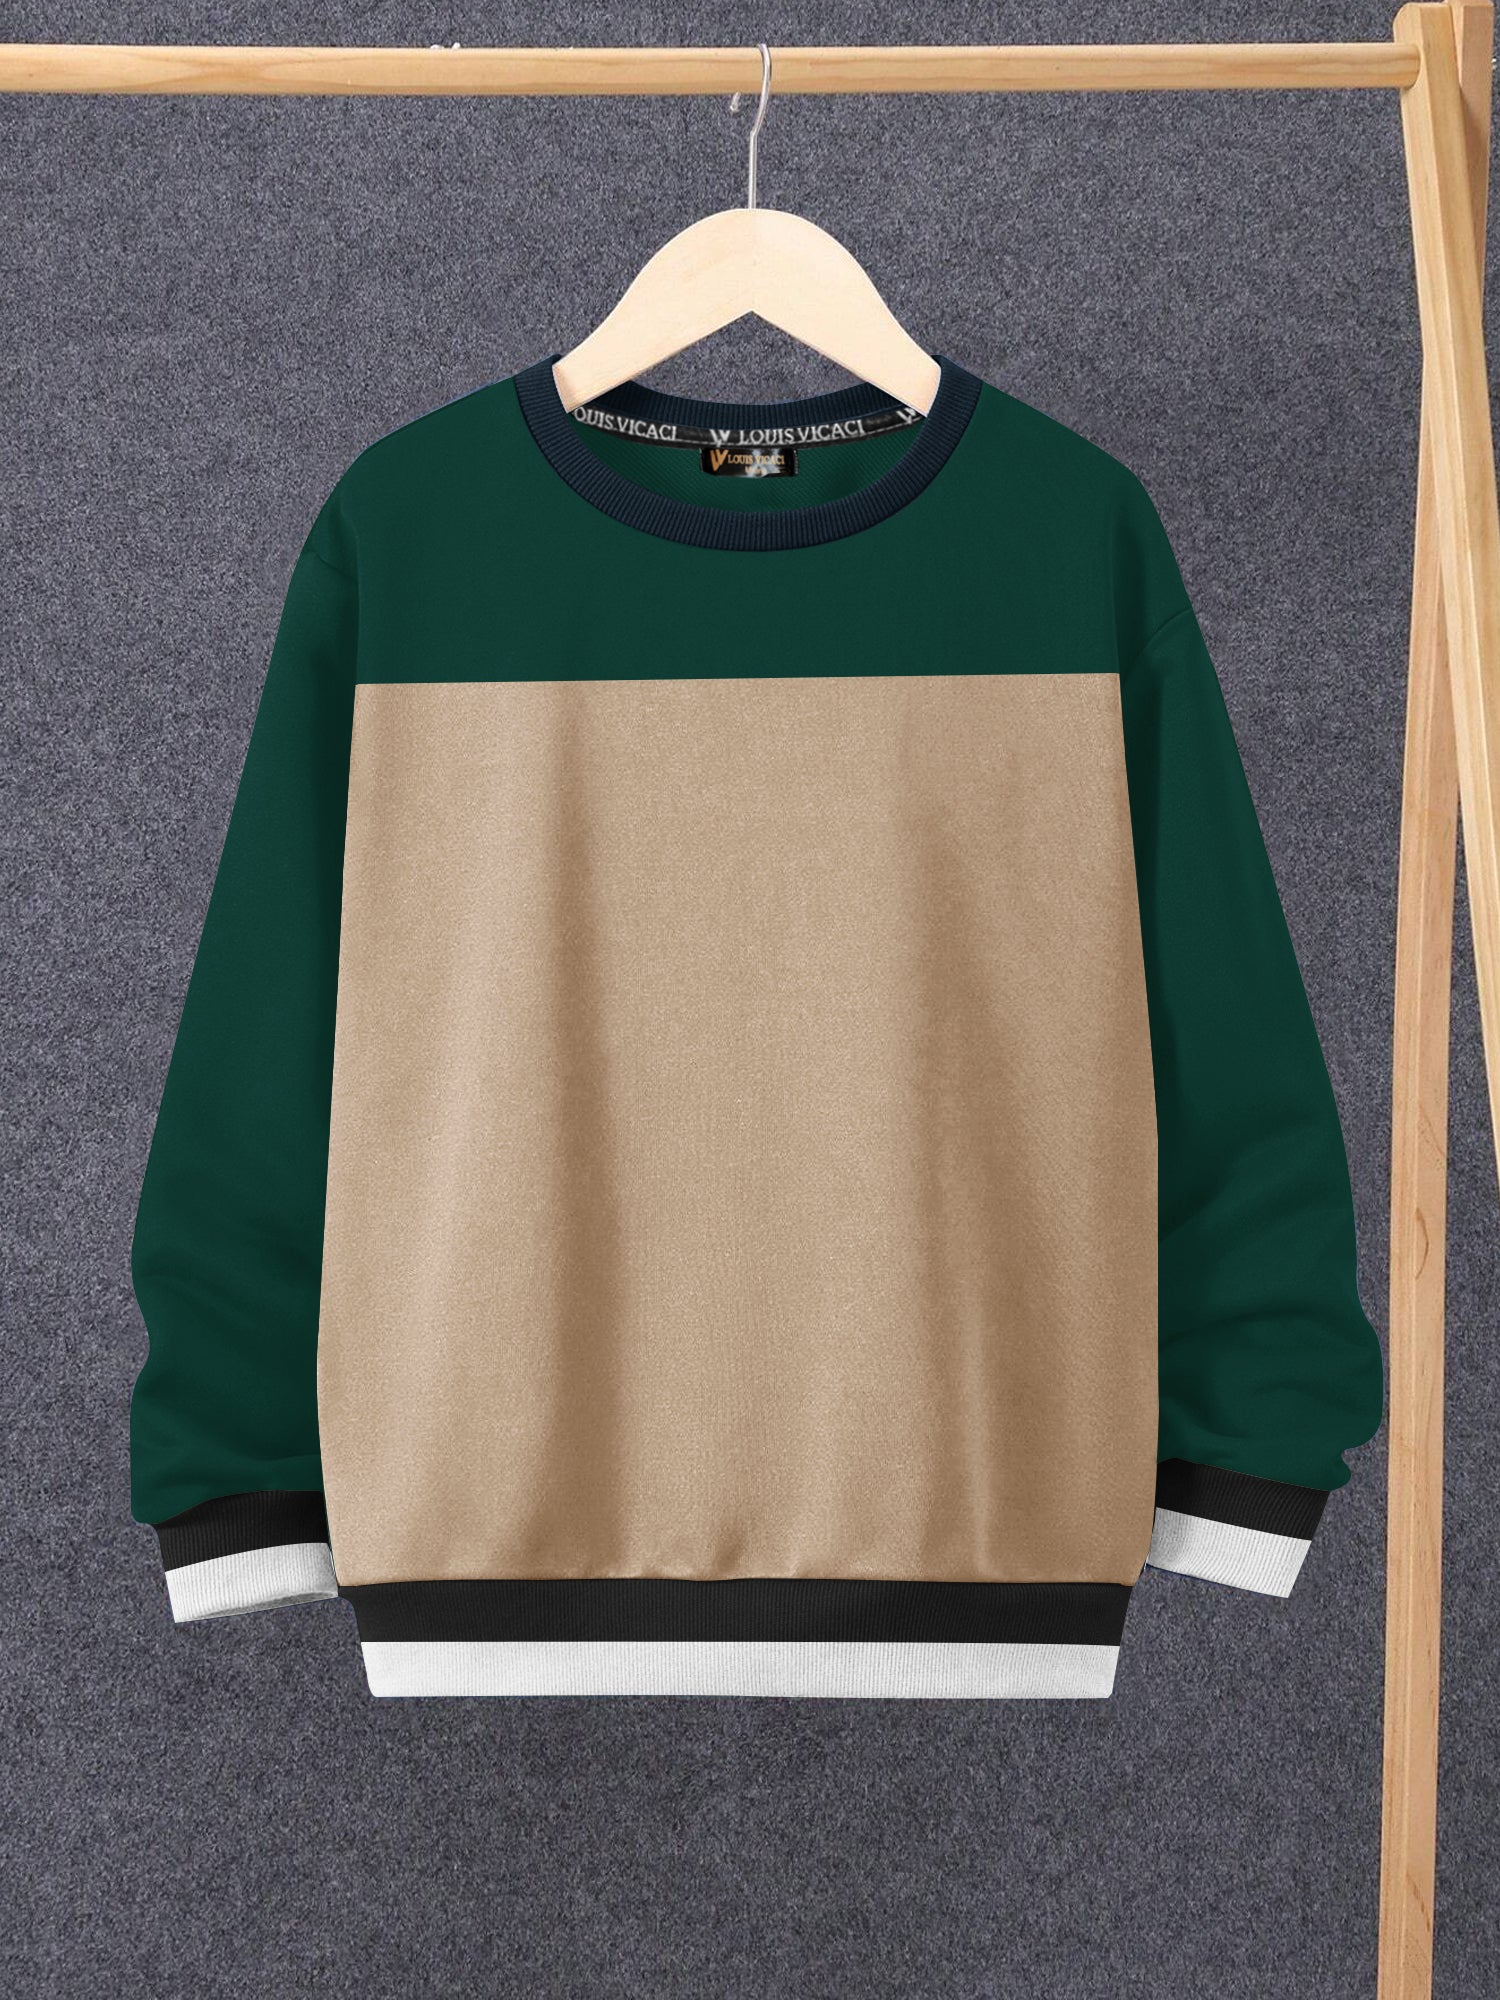 Louis Vicaci Fleece Sweatshirt For Kids-Camel & Dark Green-SP1487/RT2347